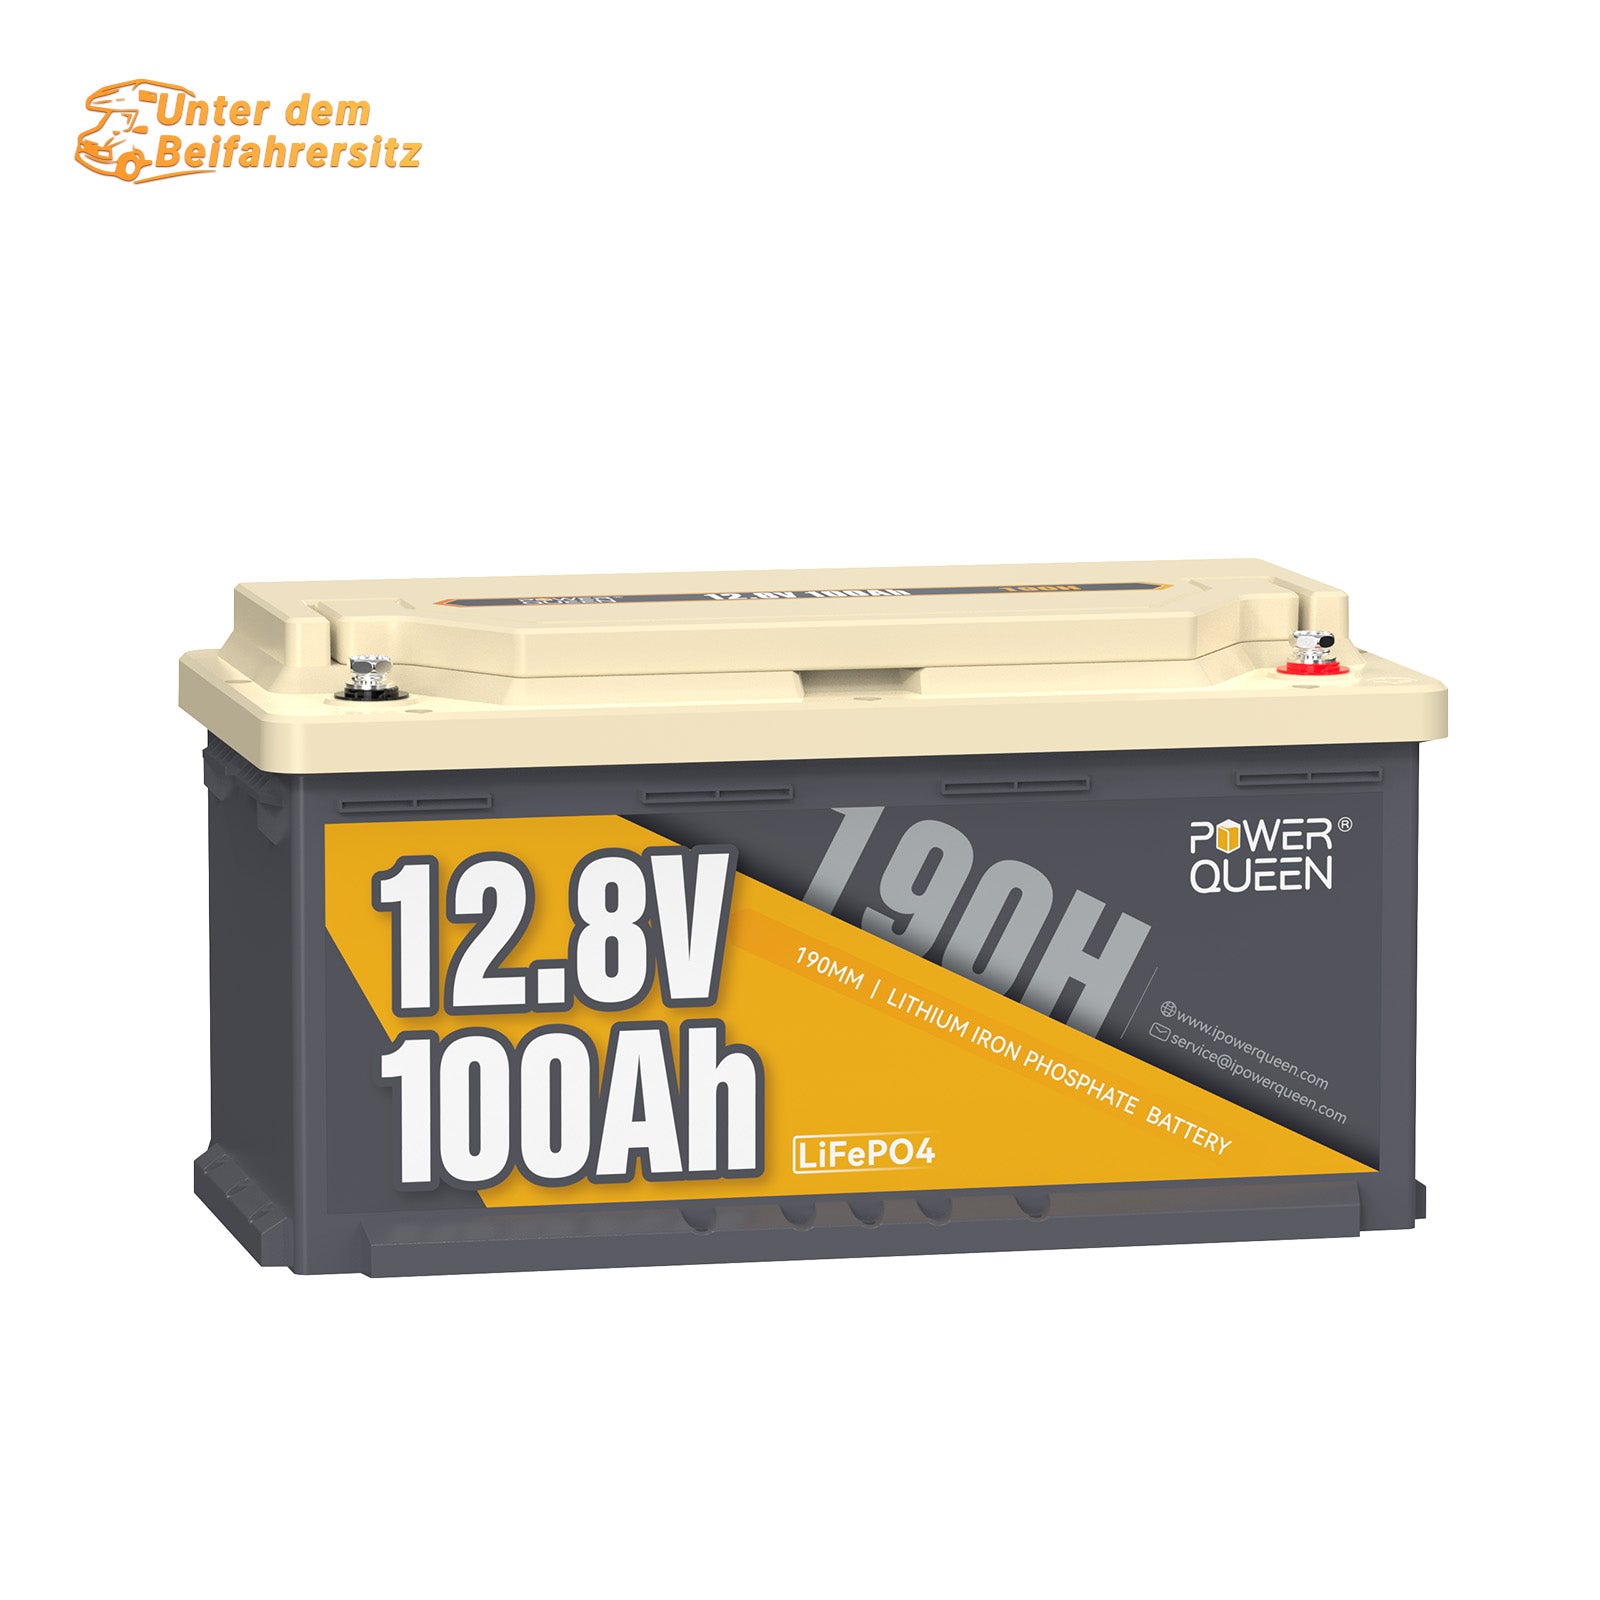 【0% VAT】Power Queen 12.8V 100Ah 190H LiFePO4 battery for motorhome, solar system